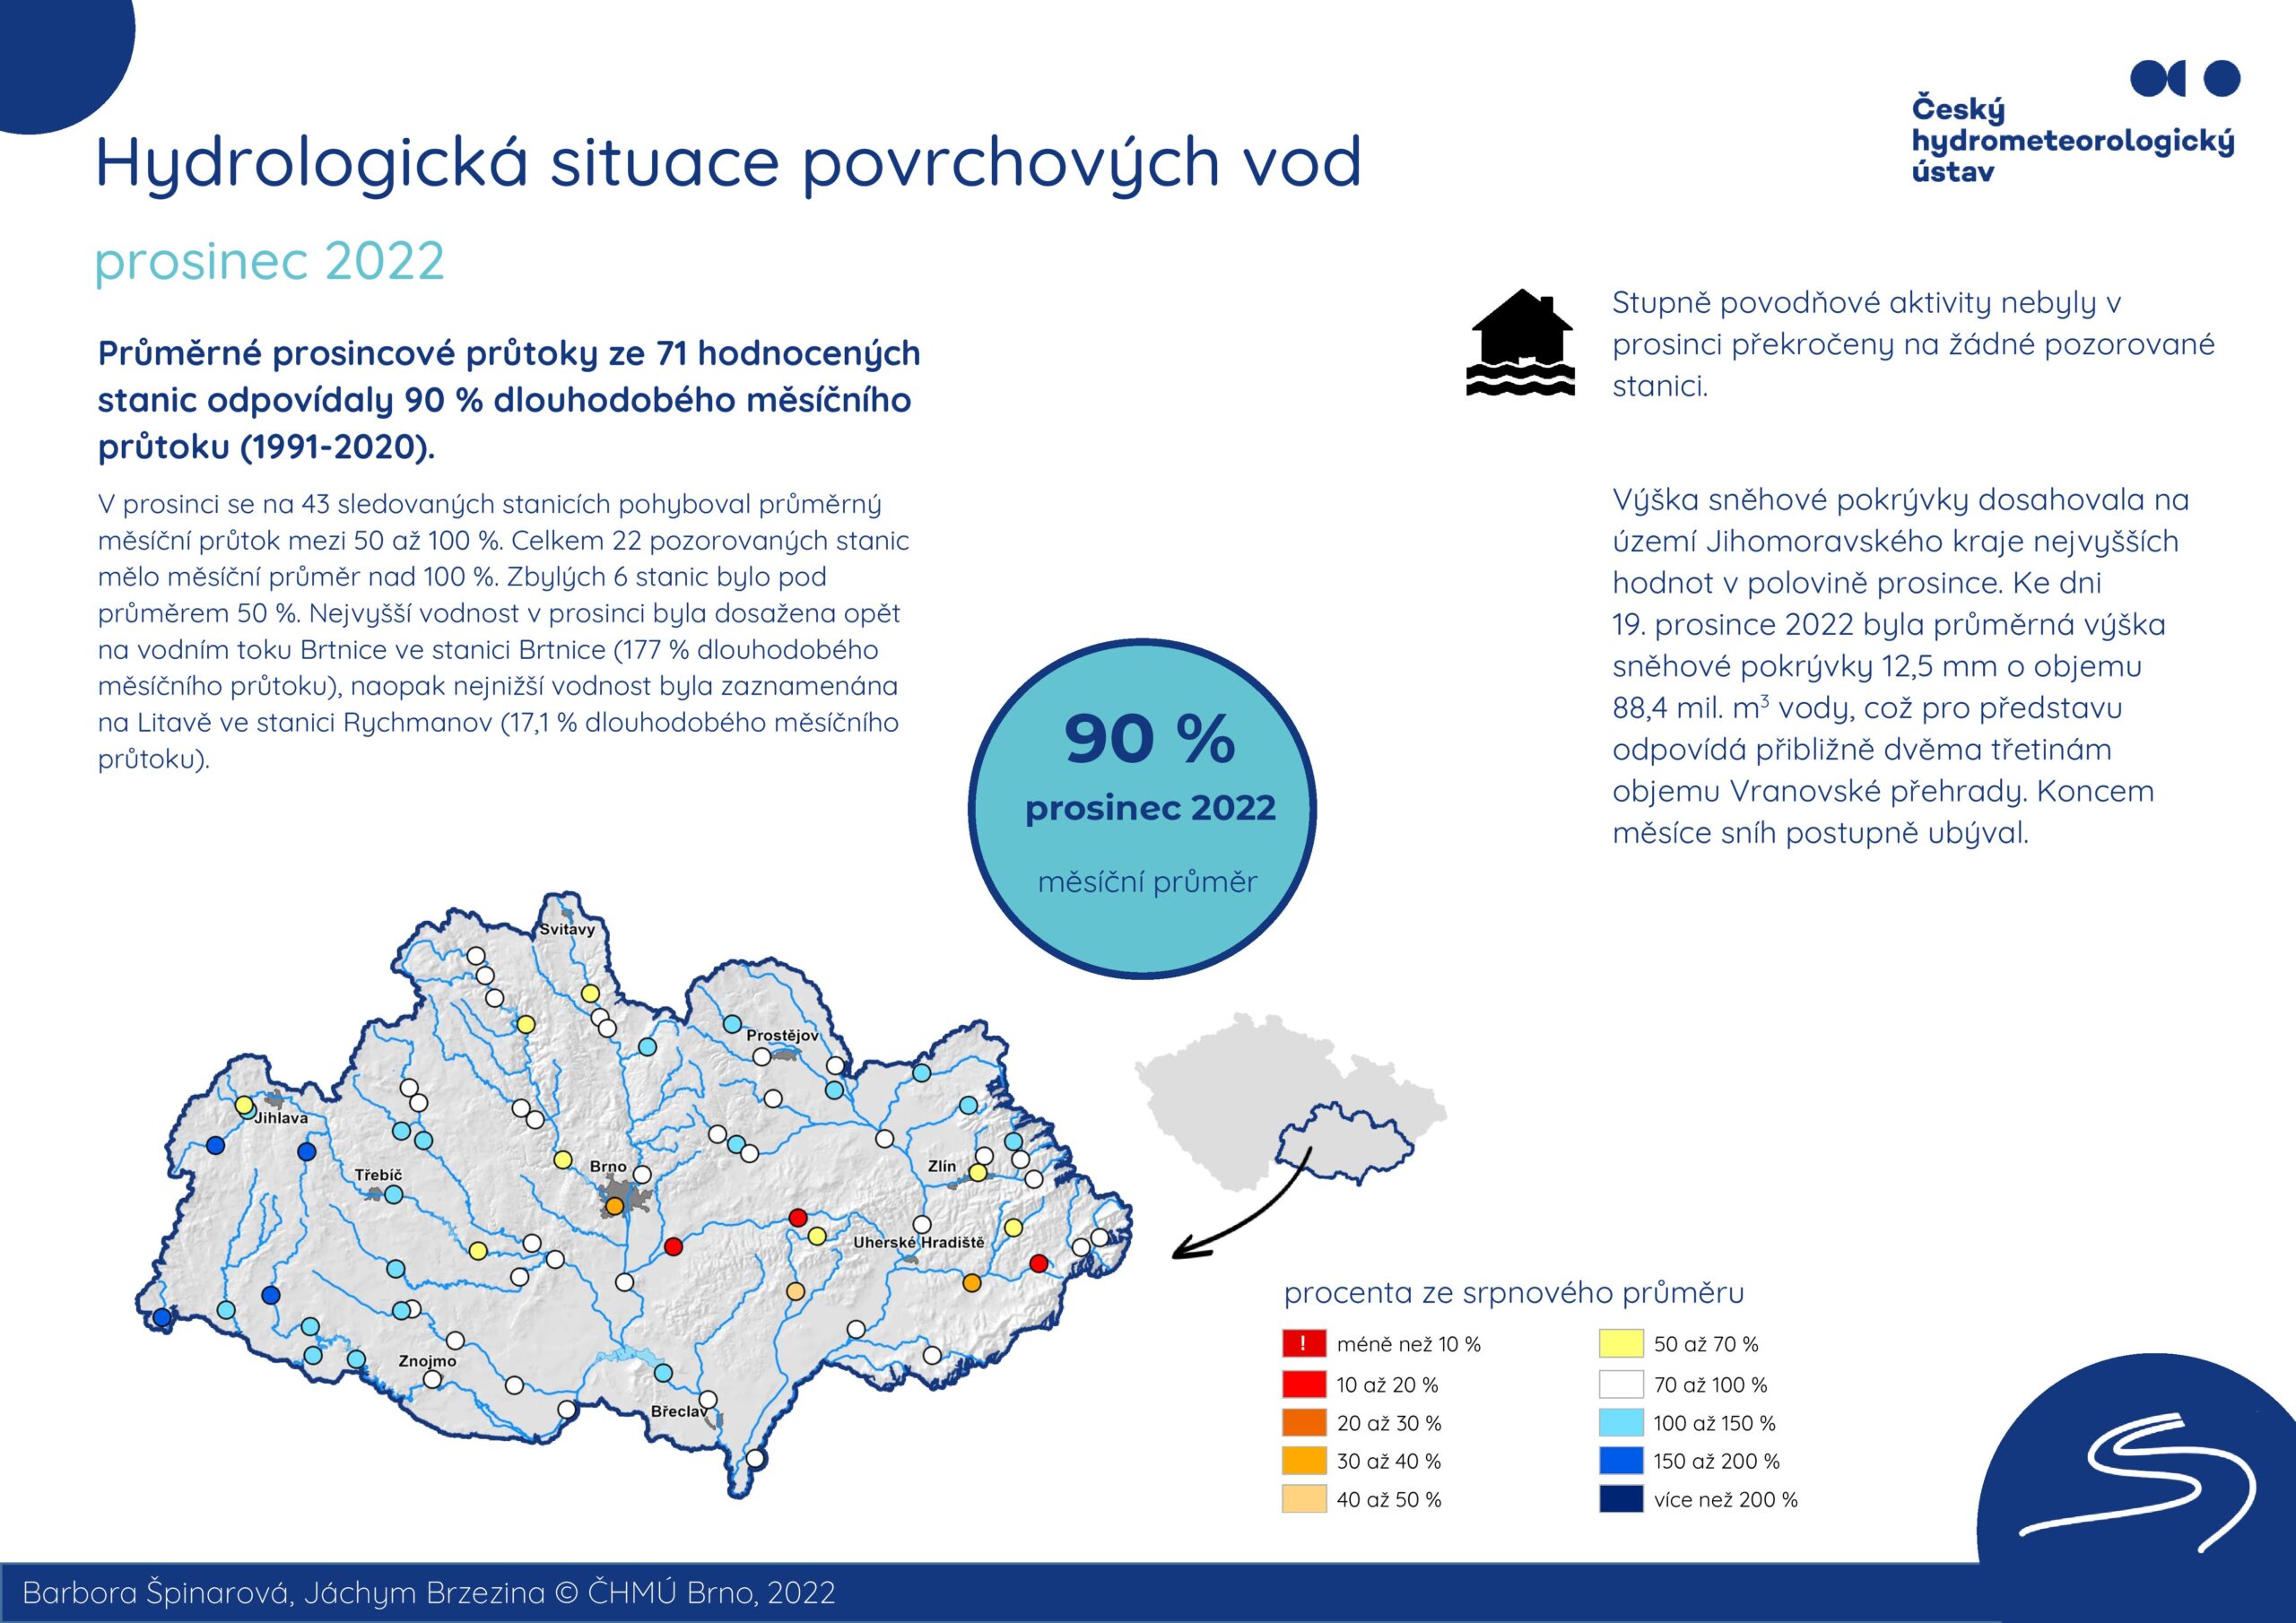 Hydrologická situace povrchových vod na pobočce Brno – prosinec 20221 min čtení